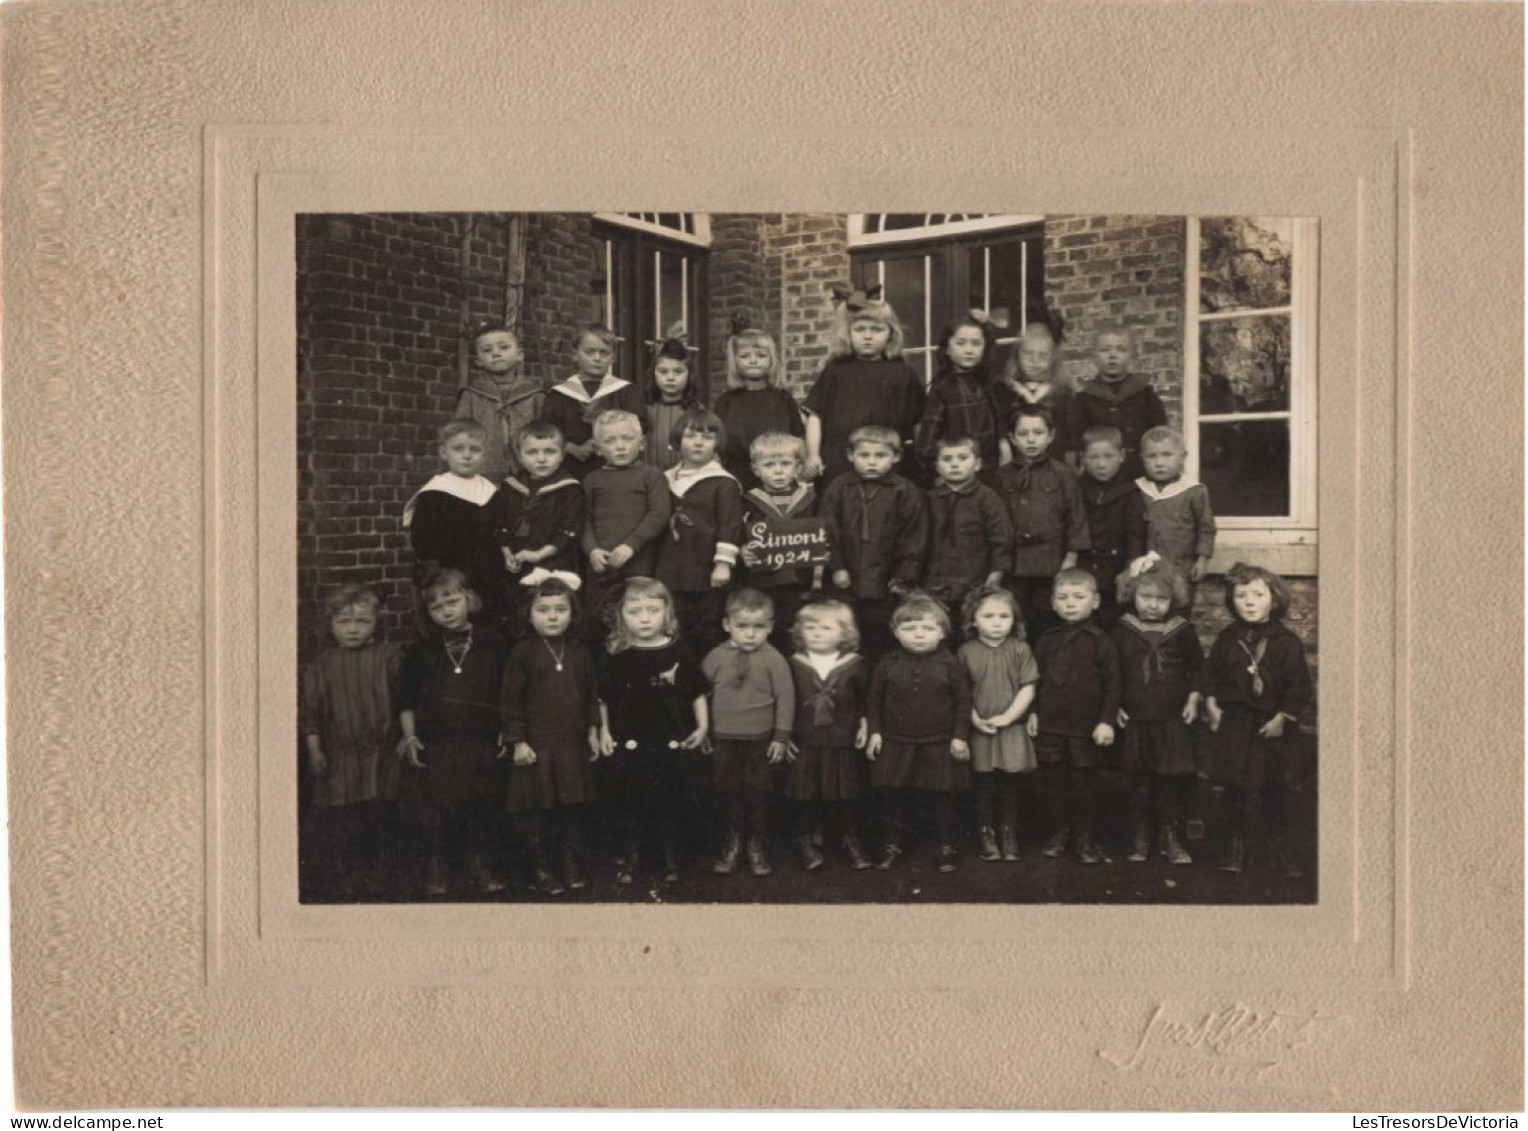 Photographie - Photo De Classe Limont 1924 - Dim 16,5/12 Cm Collé Sur Carton - Personnes Identifiées